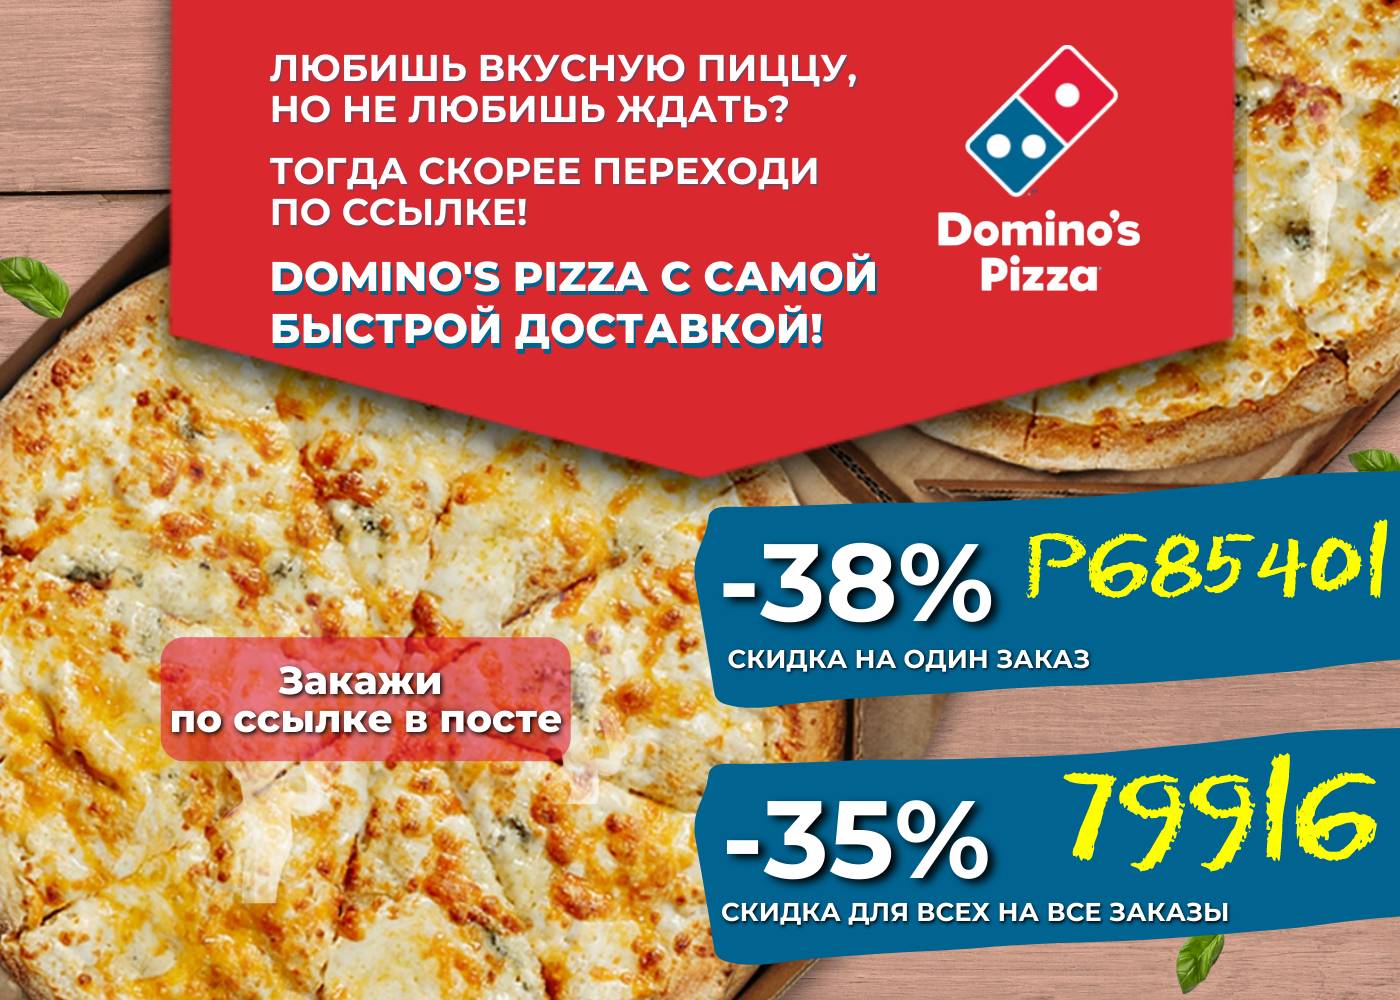 Domino's pizza промокод